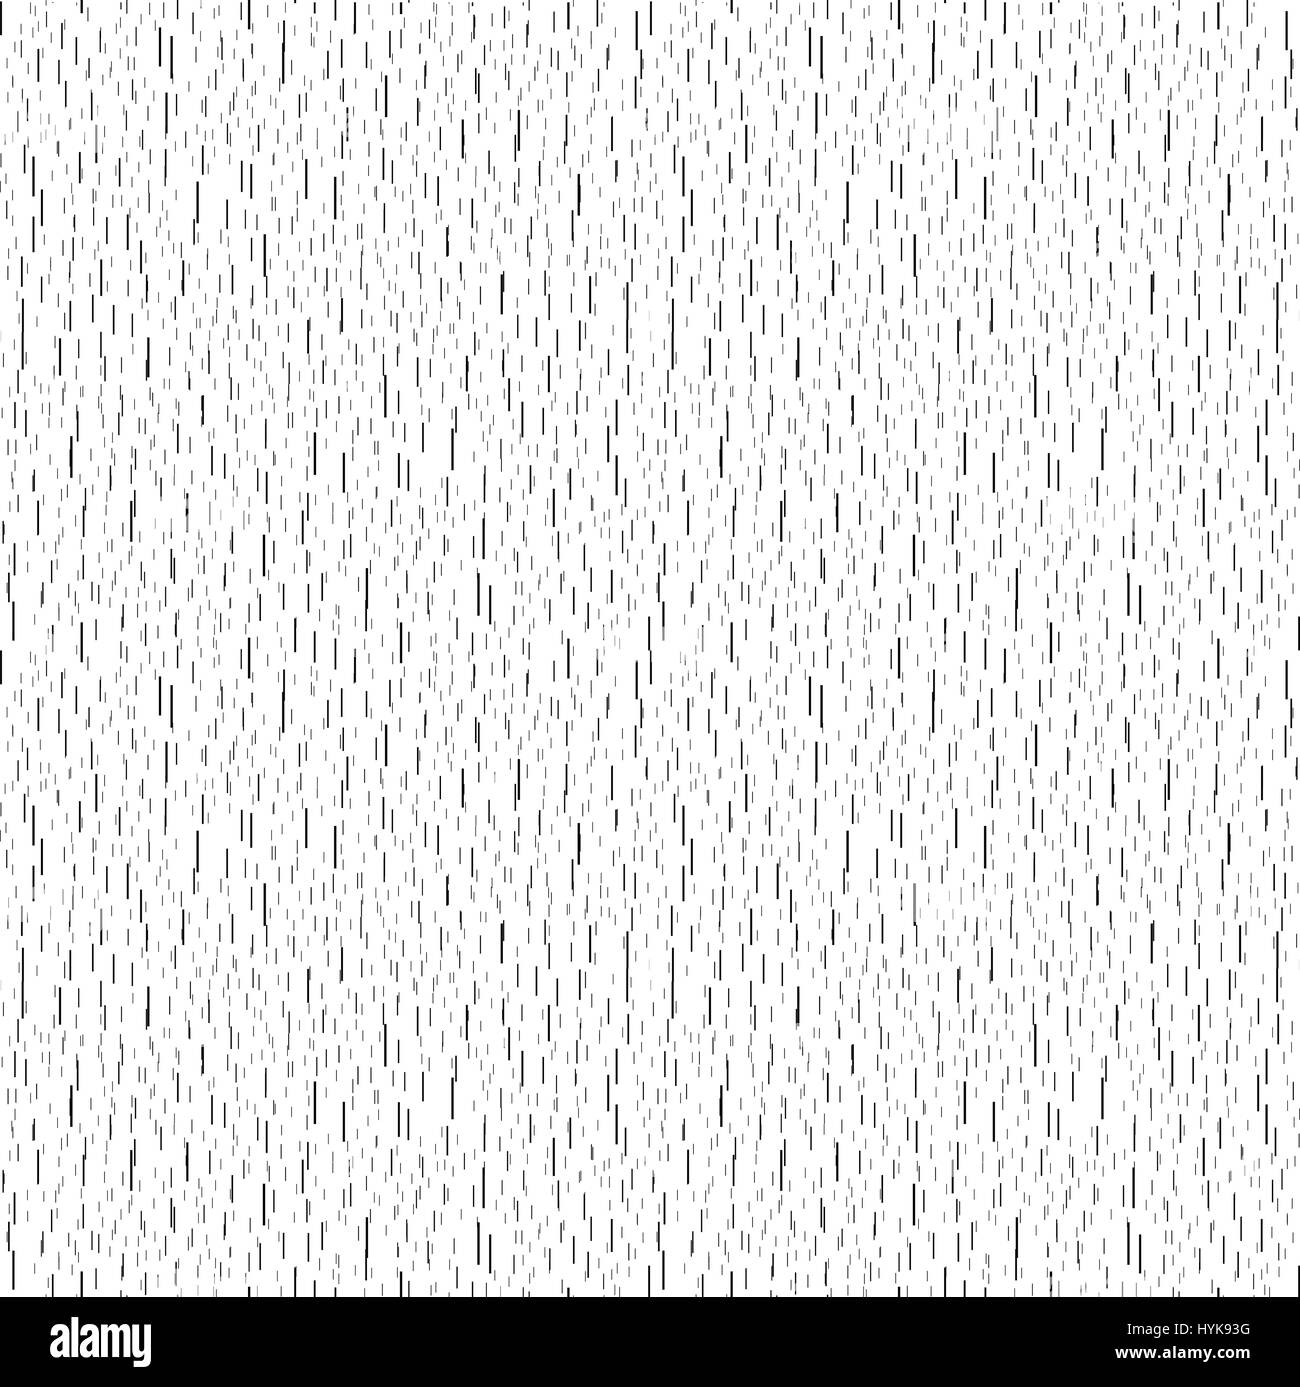 Isolierte abstrakt stilisierte Regen Hintergrund fallen Wasser Tropfen Textur, schwarze vertikale Striche auf weißem Hintergrund-Vektor-illustration Stock Vektor